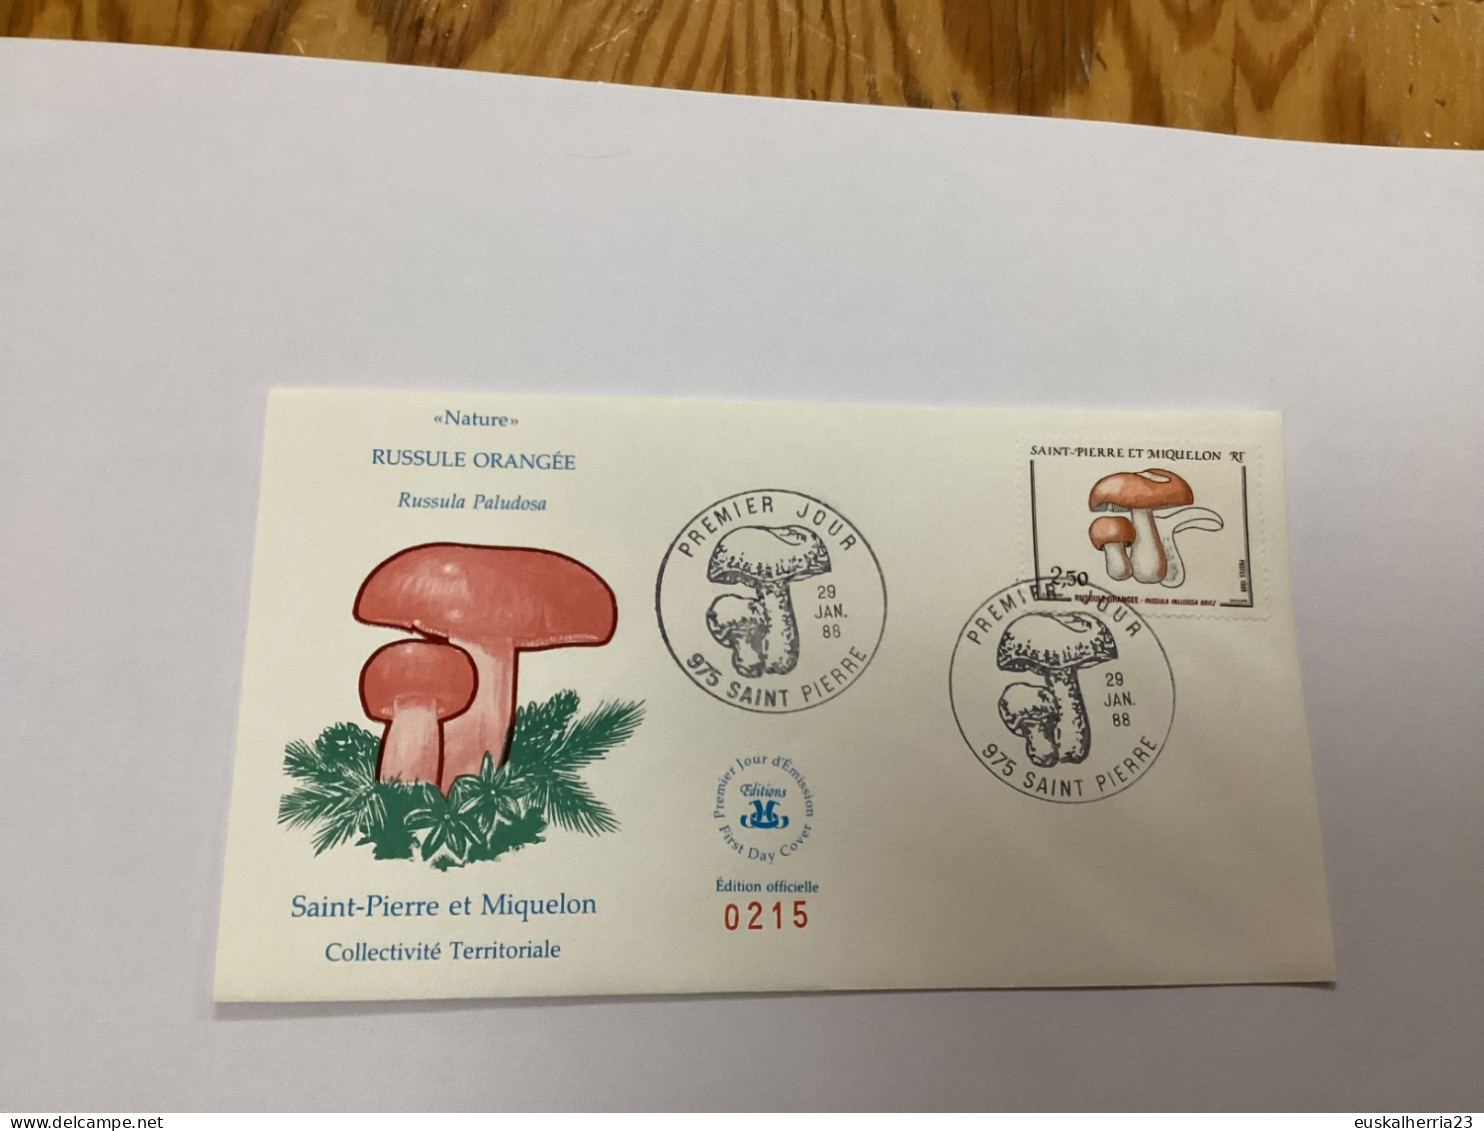 Enveloppe 1er Jour Saint-pierre Et Miquelon Russule Orangée 1988 - Oblitérés